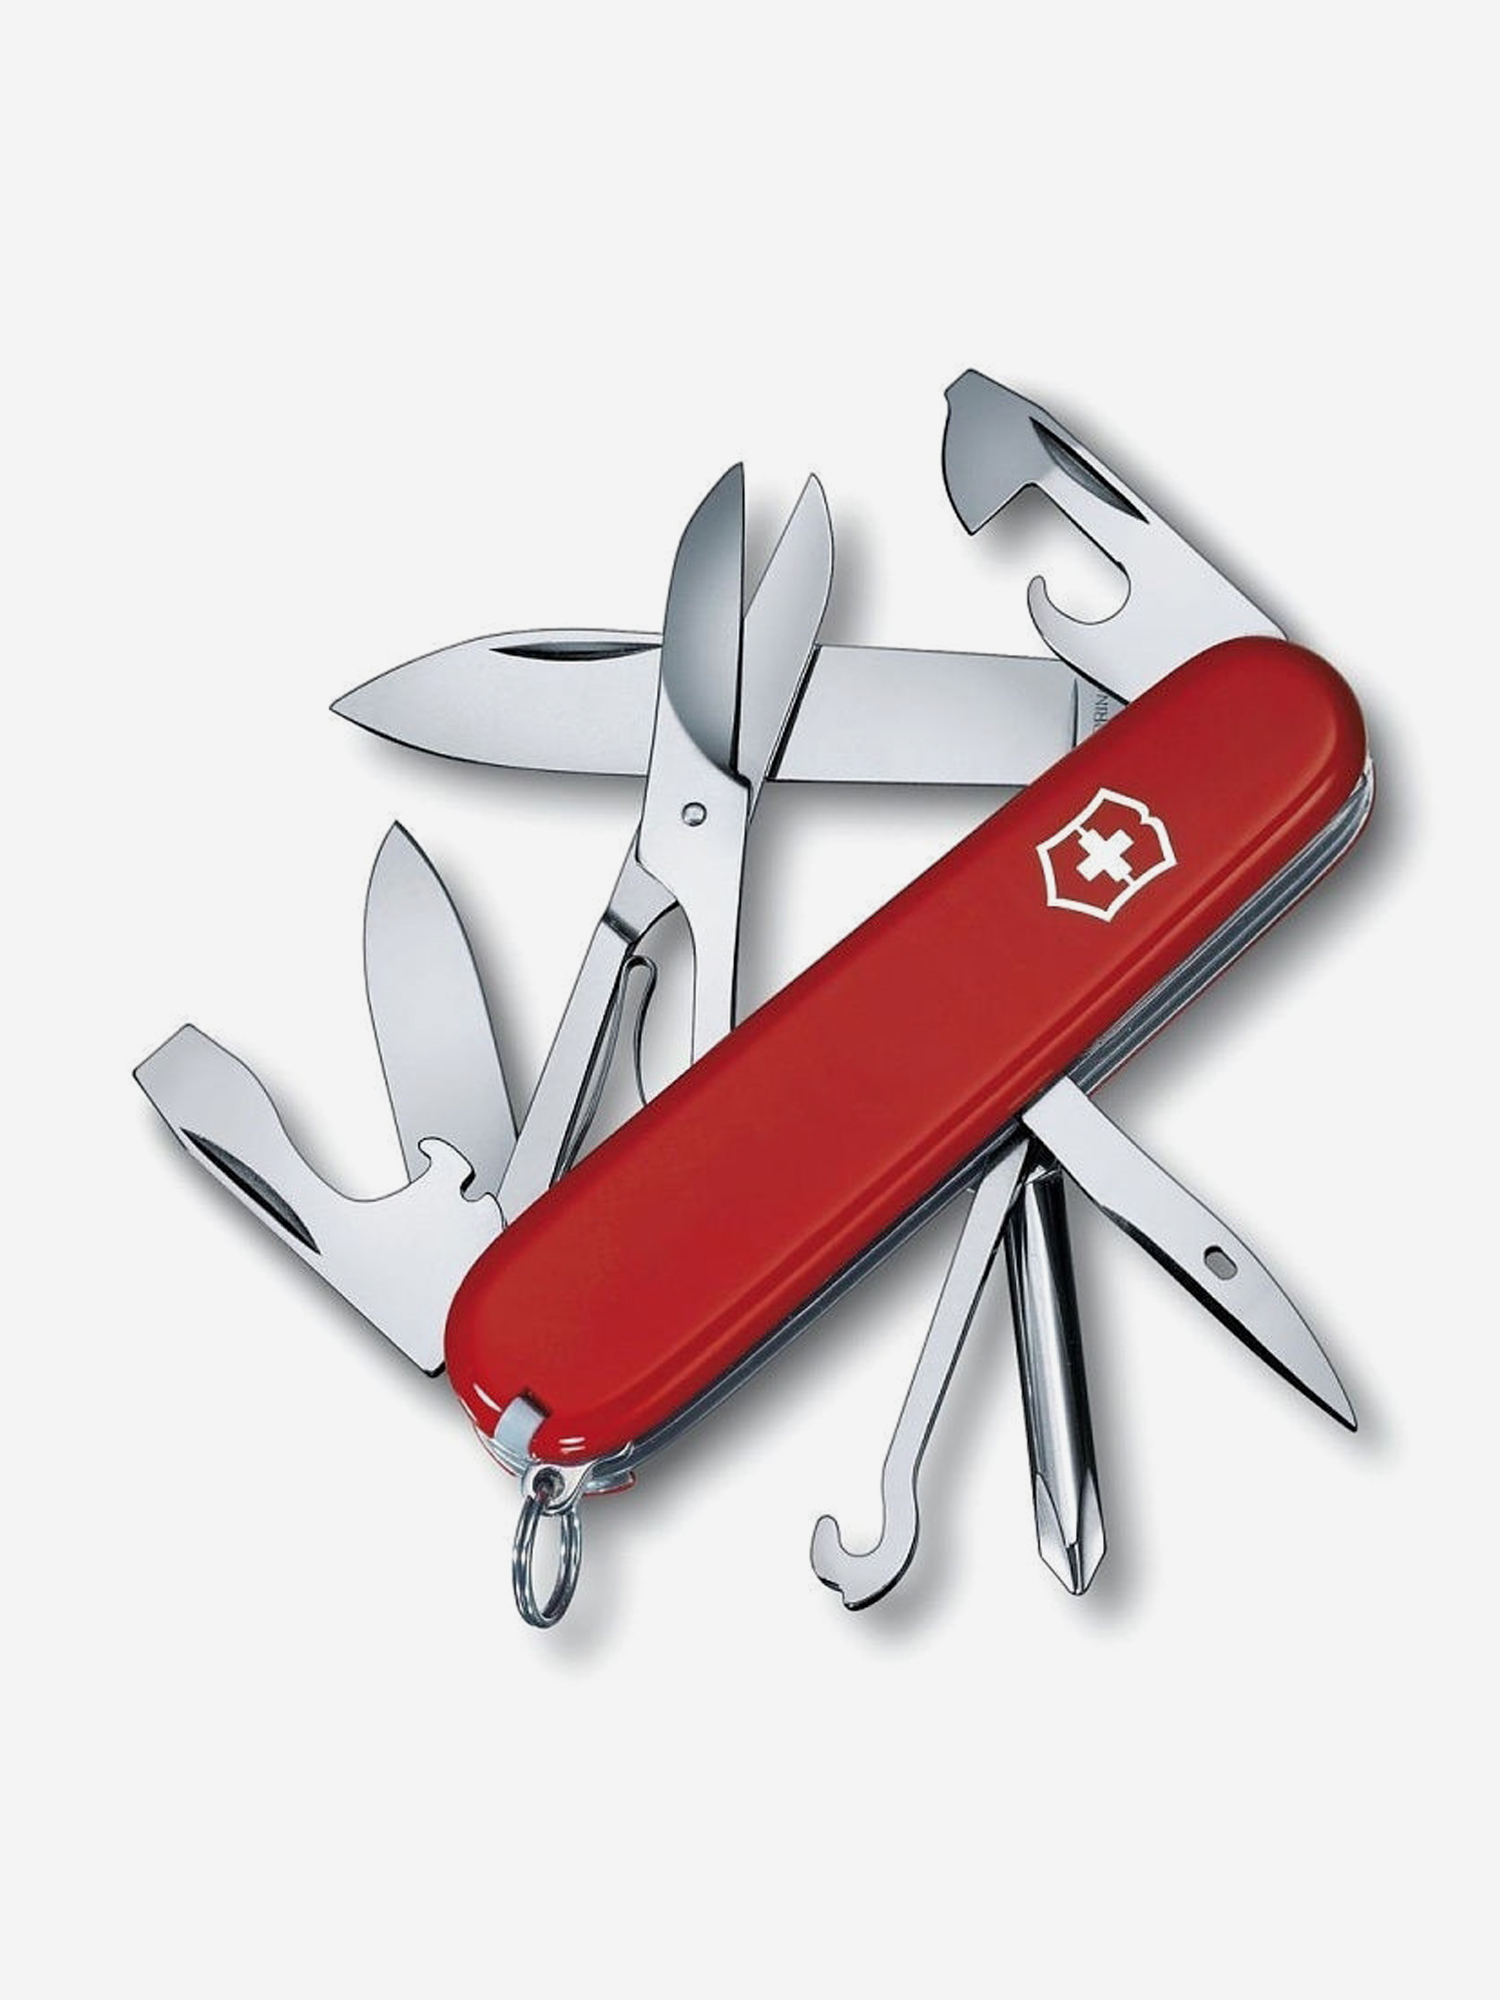 Нож складной Victorinox Super Tinker, 91 мм, 14 функций, Красный нож складной victorinox super tinker 91 мм 14 функций красный